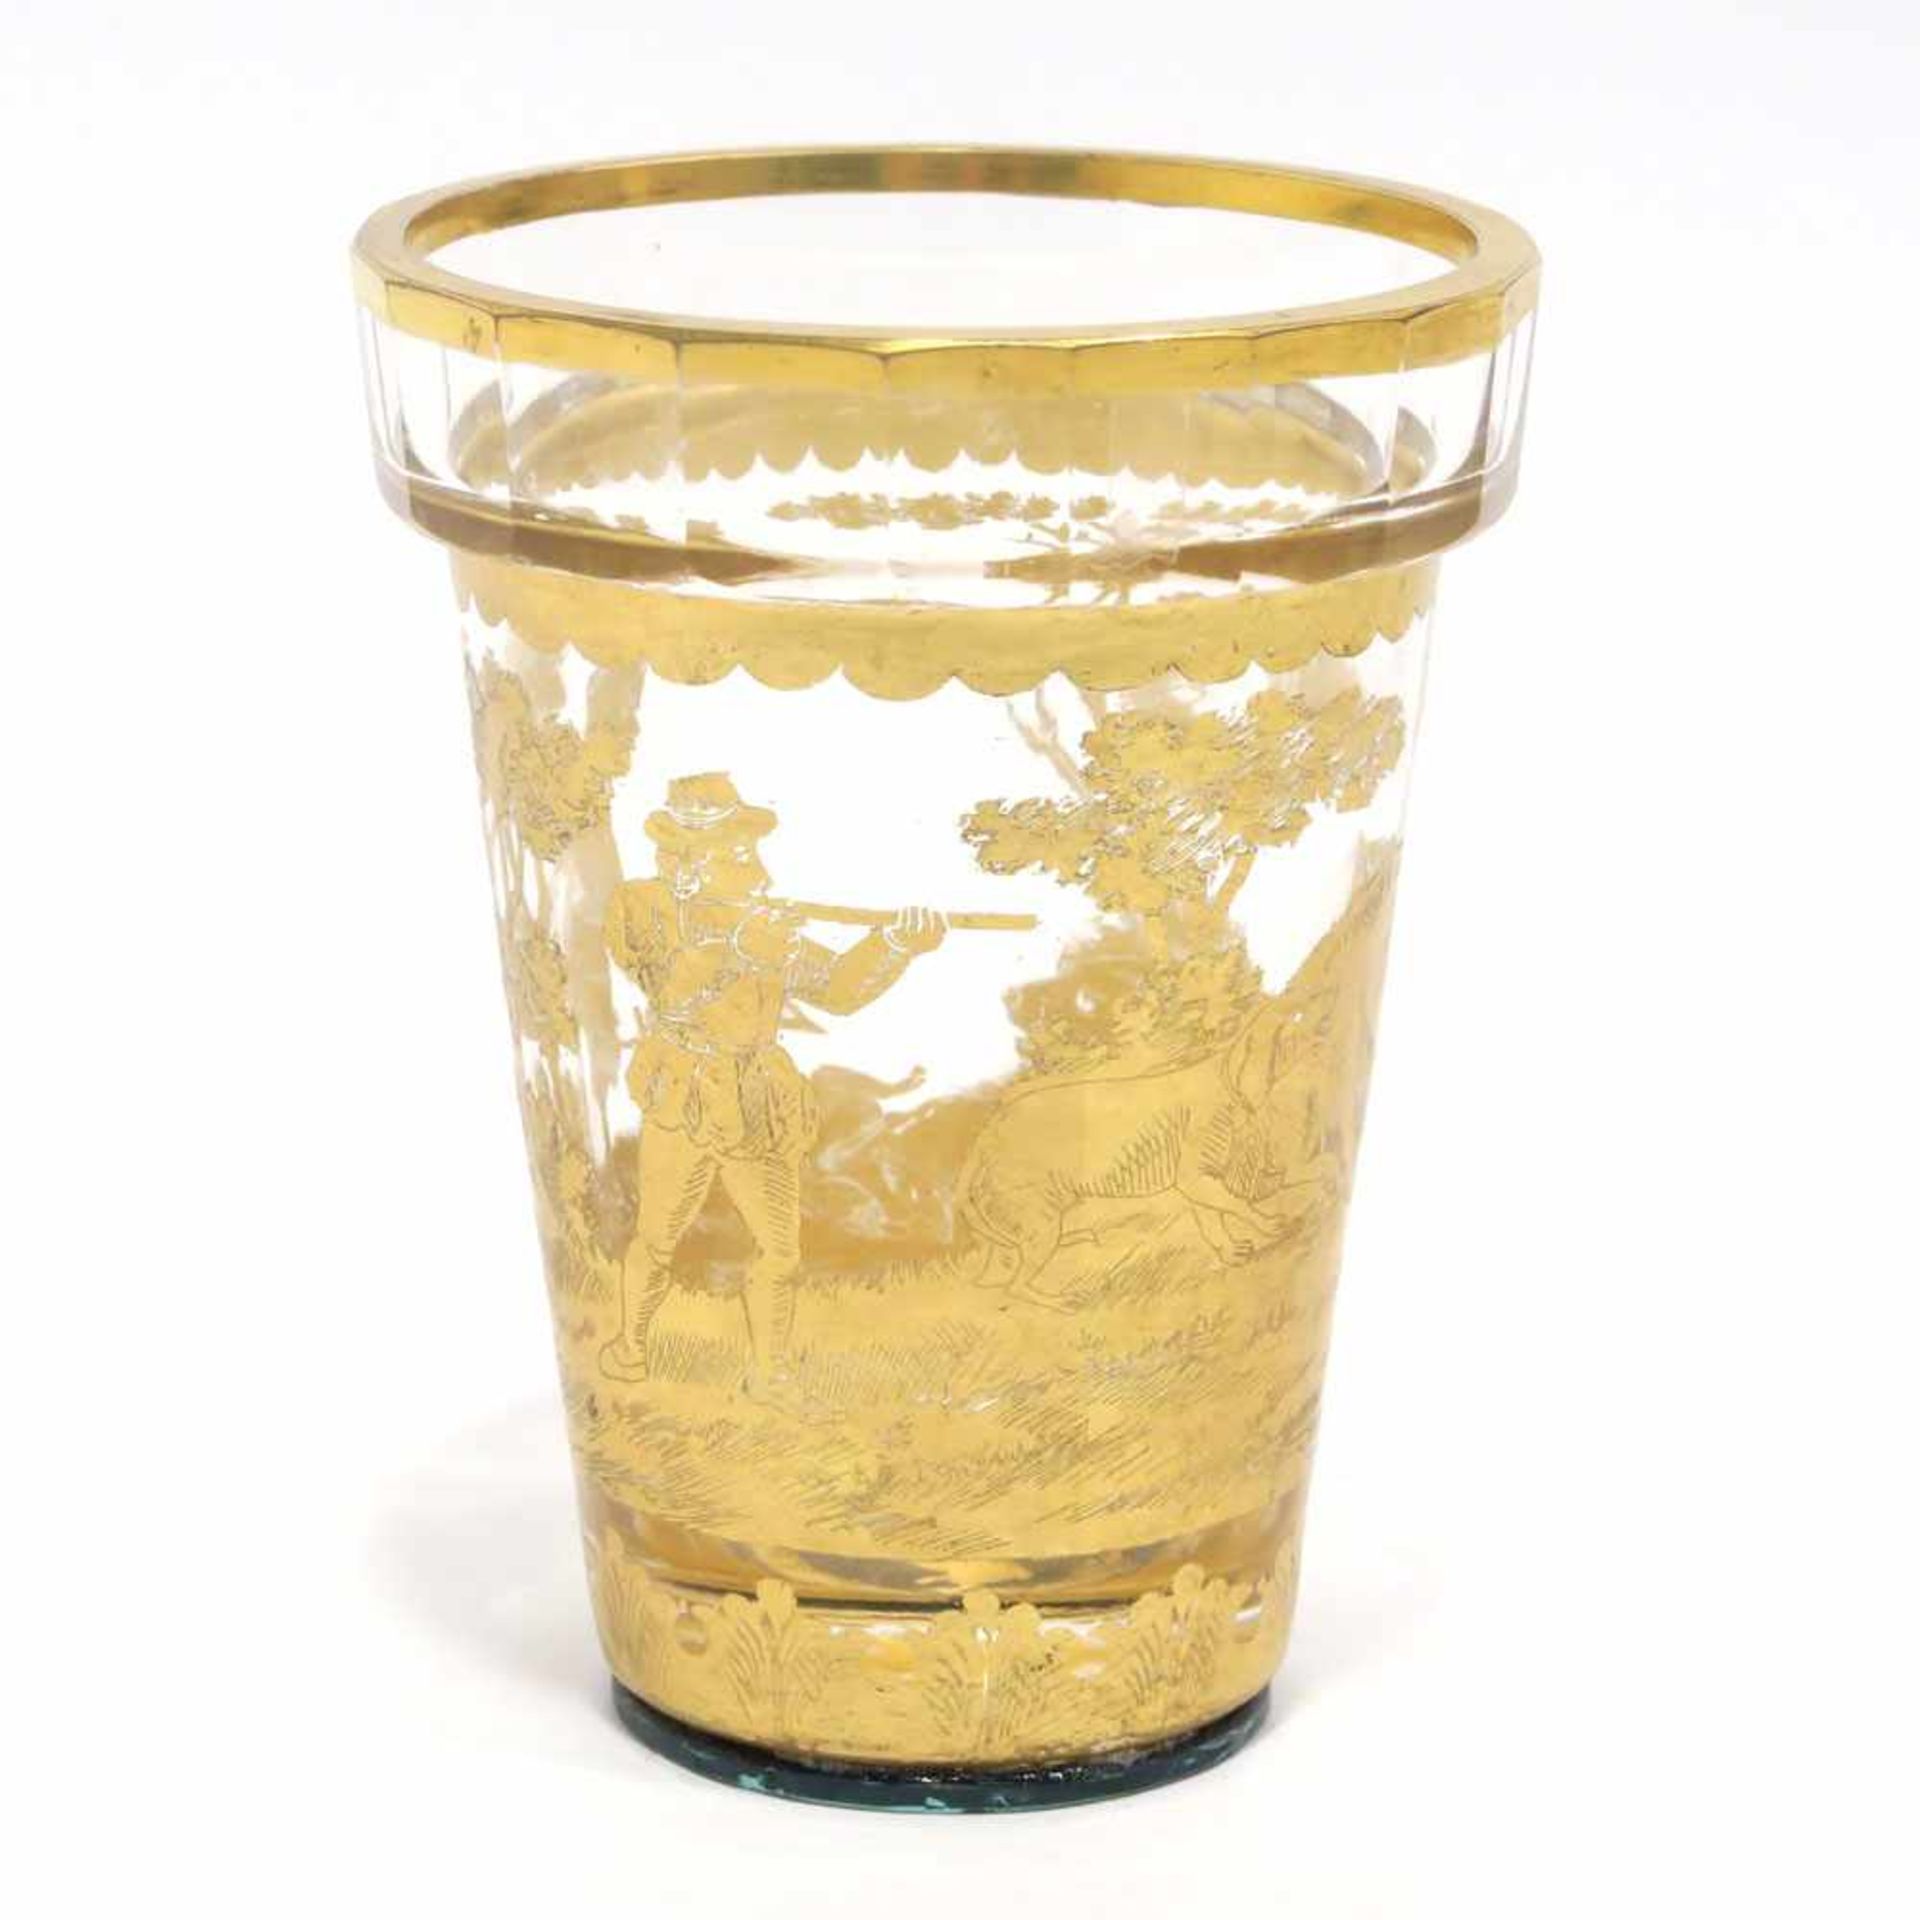 Innenbecher eines ZwischengoldbechersBöhmen, 19./20. Jh. Farbloses Glas mit radiertem Golddekor: